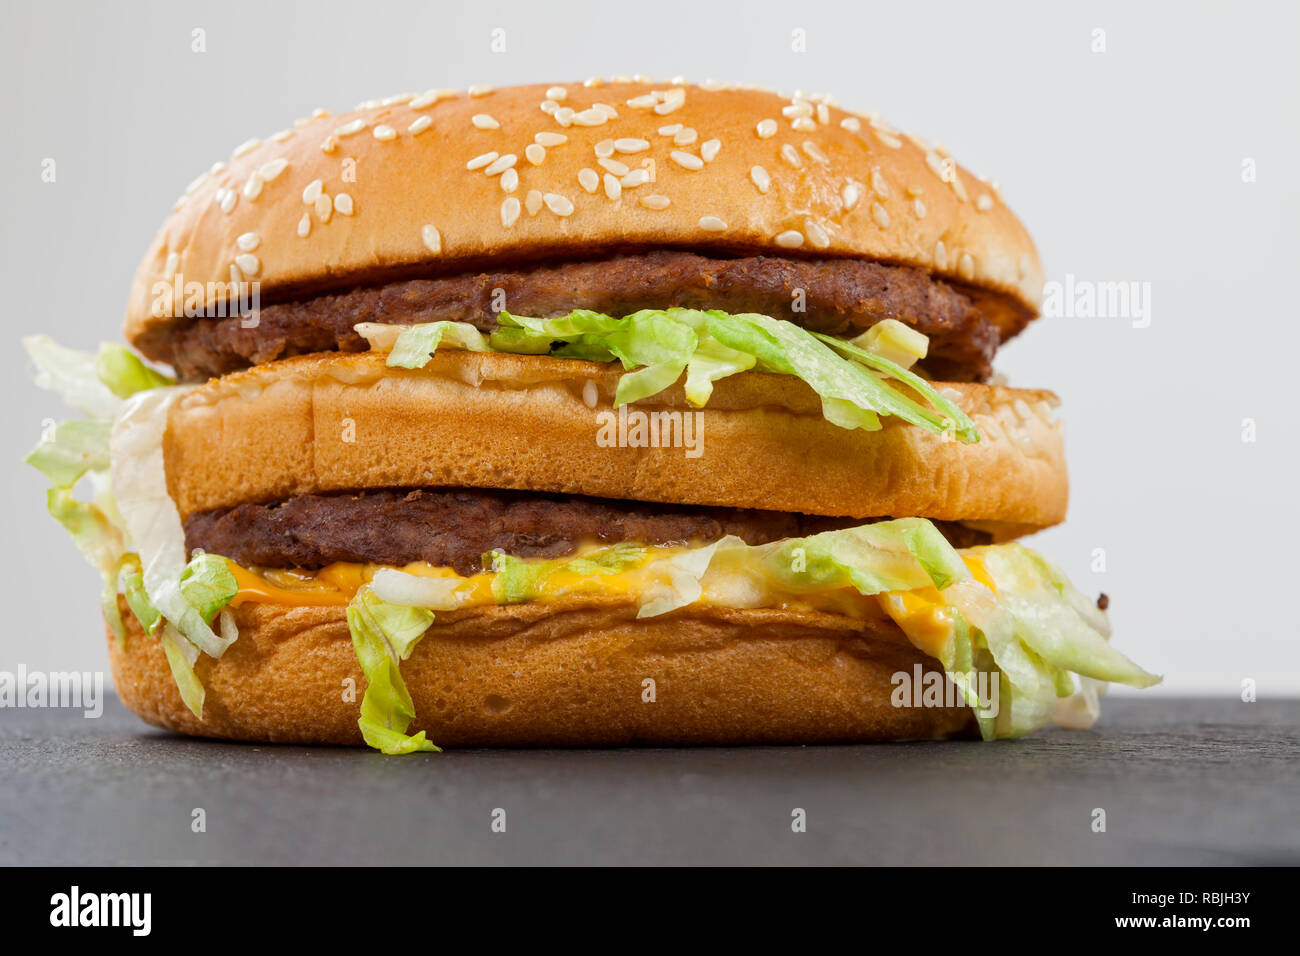 In Der Nahe Bild Von Einem Leckeren Double Cheeseburger Mit Rindfleisch Cheddar Salat In Einem Sesambrotchen Stockfotografie Alamy